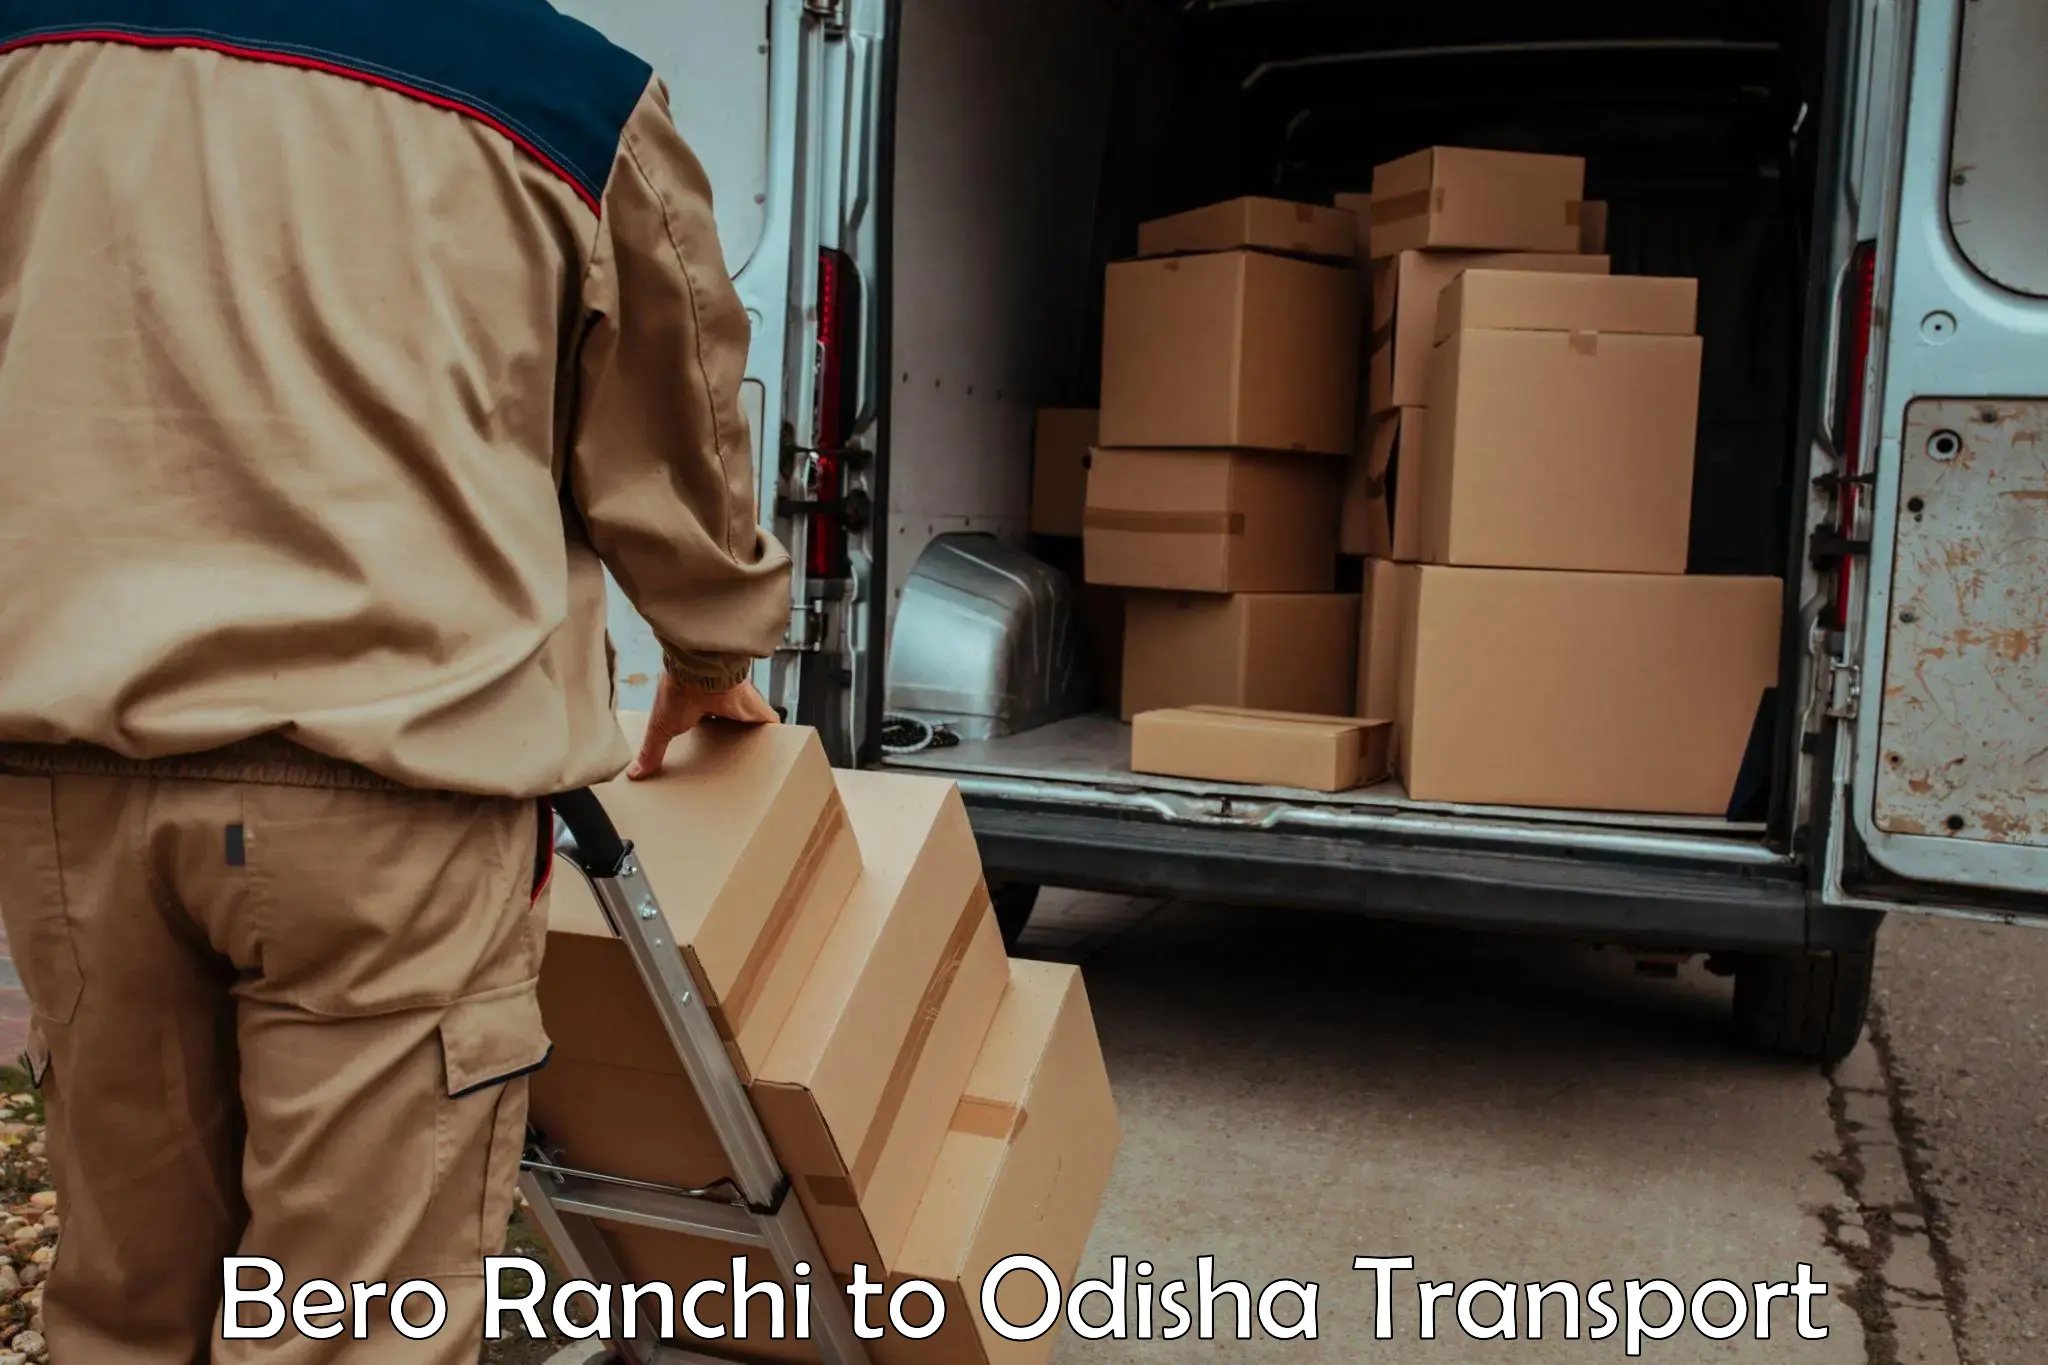 Transport in sharing in Bero Ranchi to Baisinga